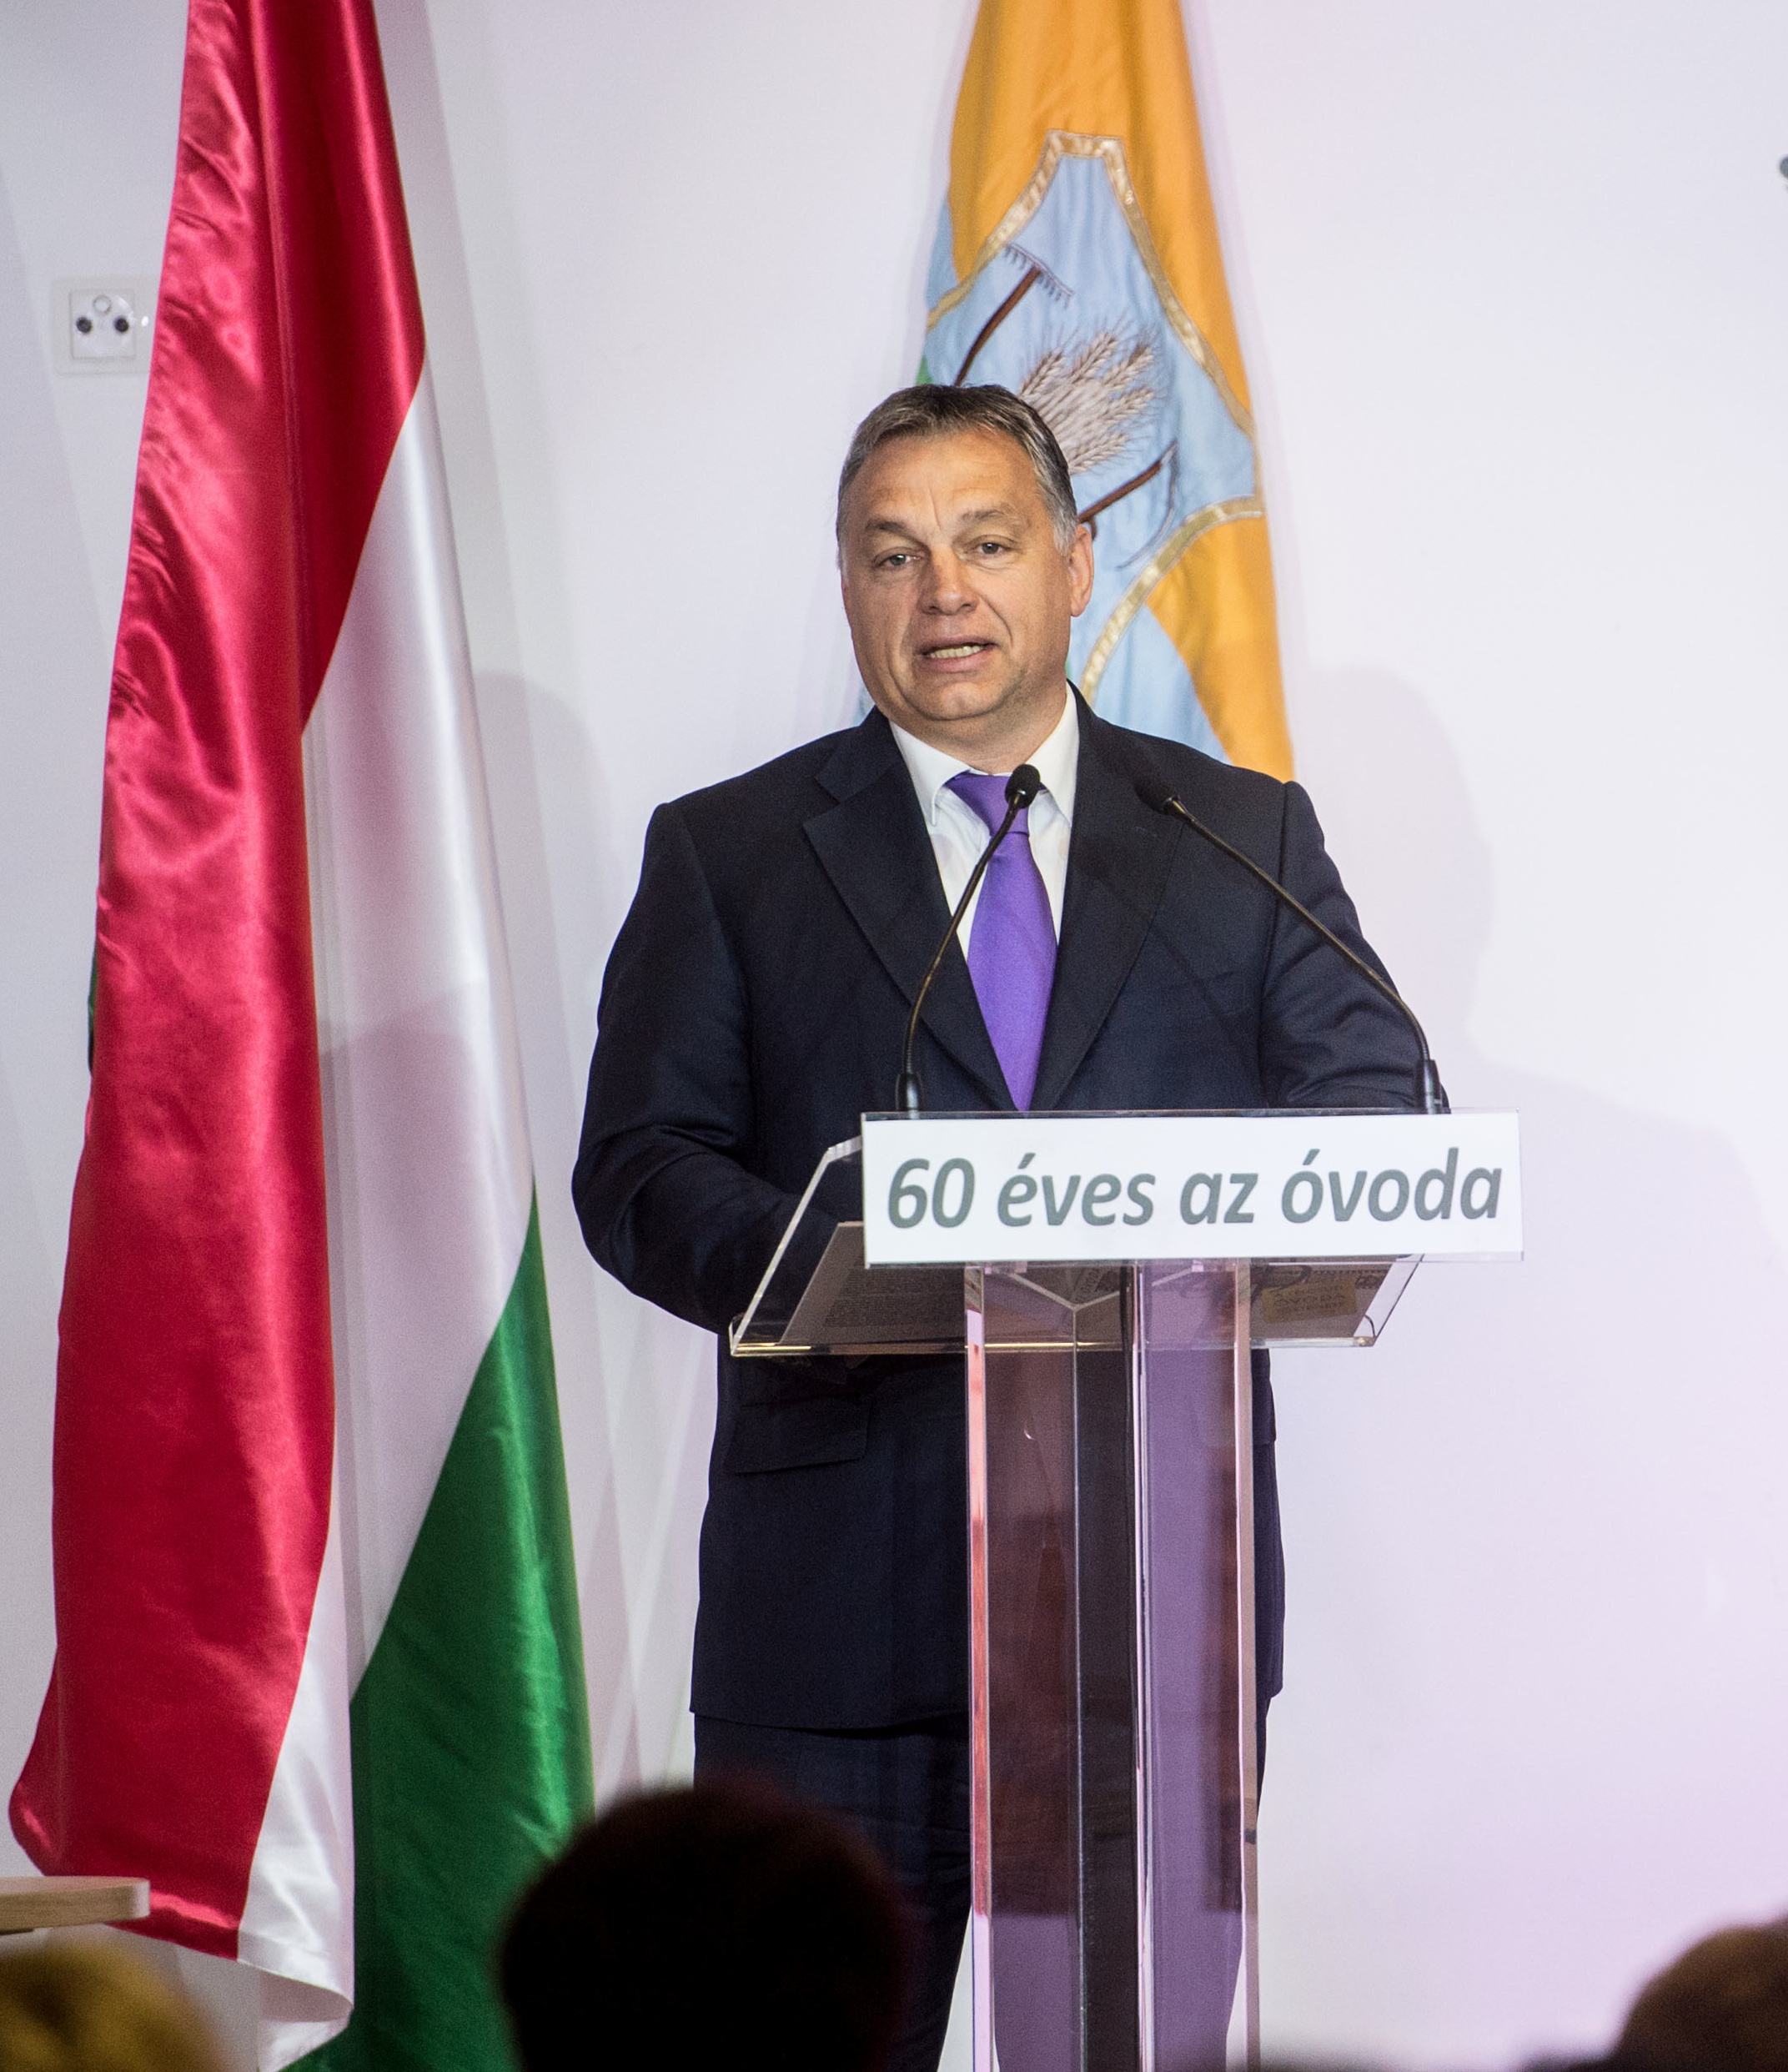 Ungarn nei Orban online foto